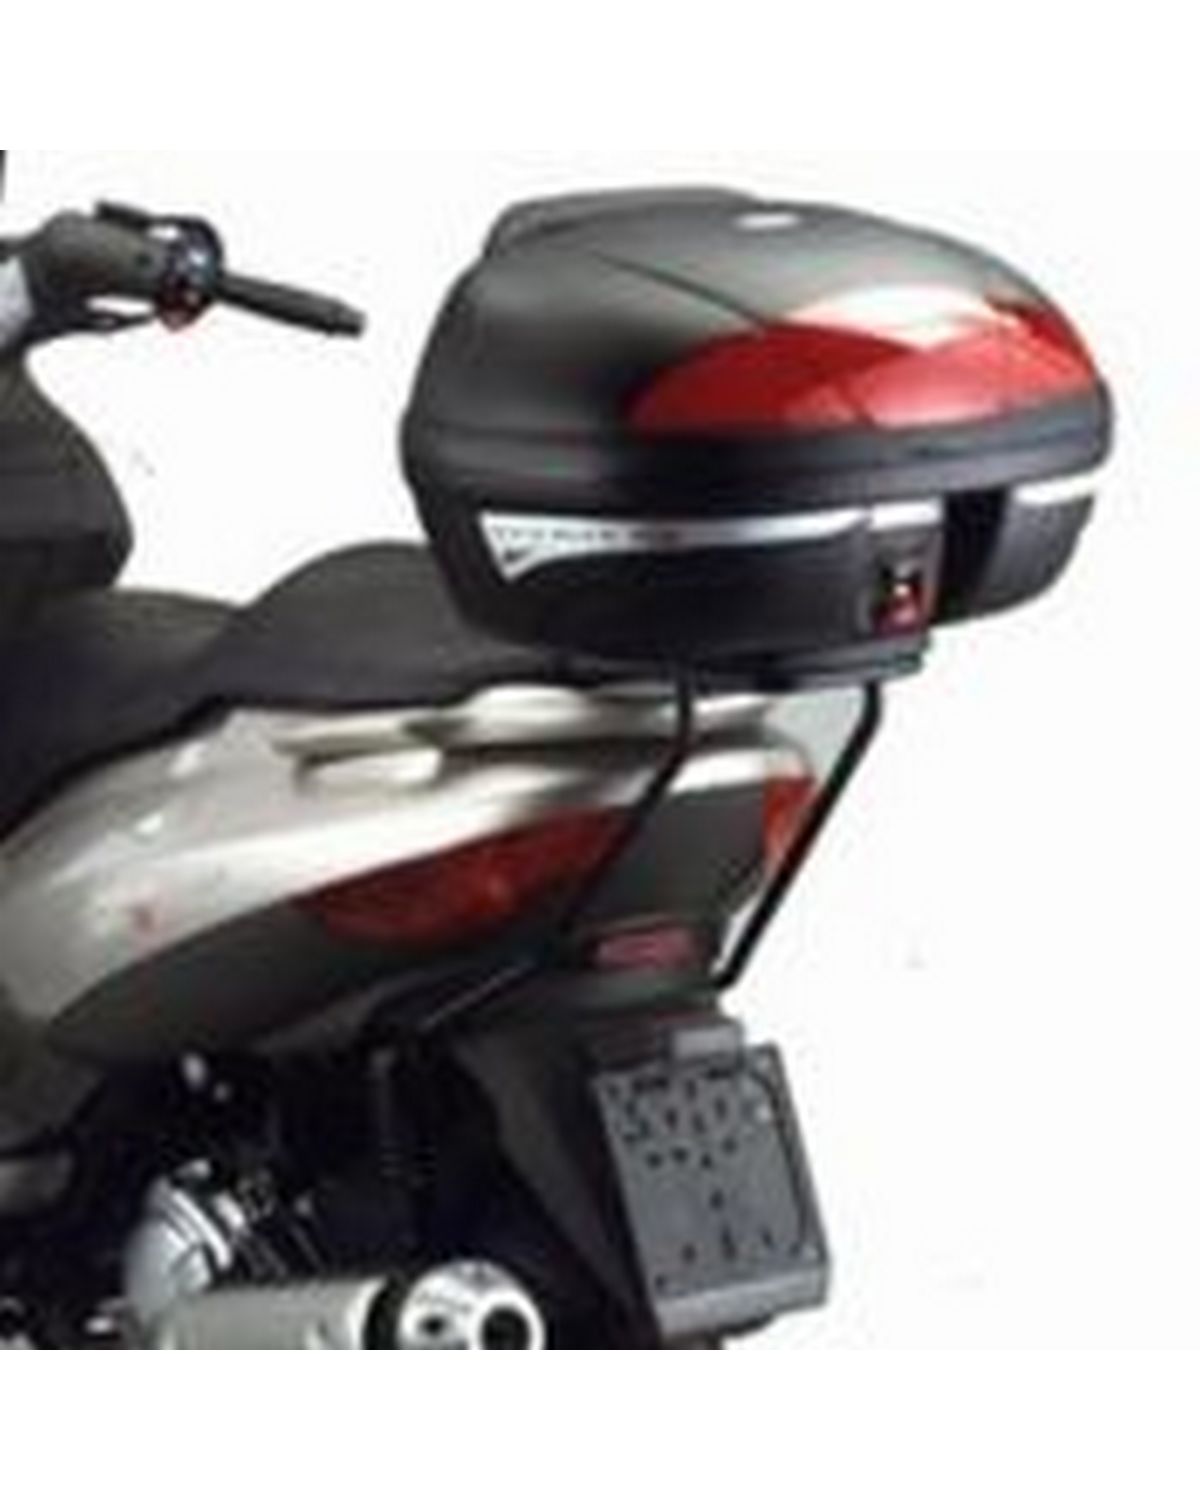 Top Case Et Valise Moto Sans Platine Givi V58nt Maxia5 Monokey 58 Litres  Noir Catadioptres Transparent - Livraison Offerte 